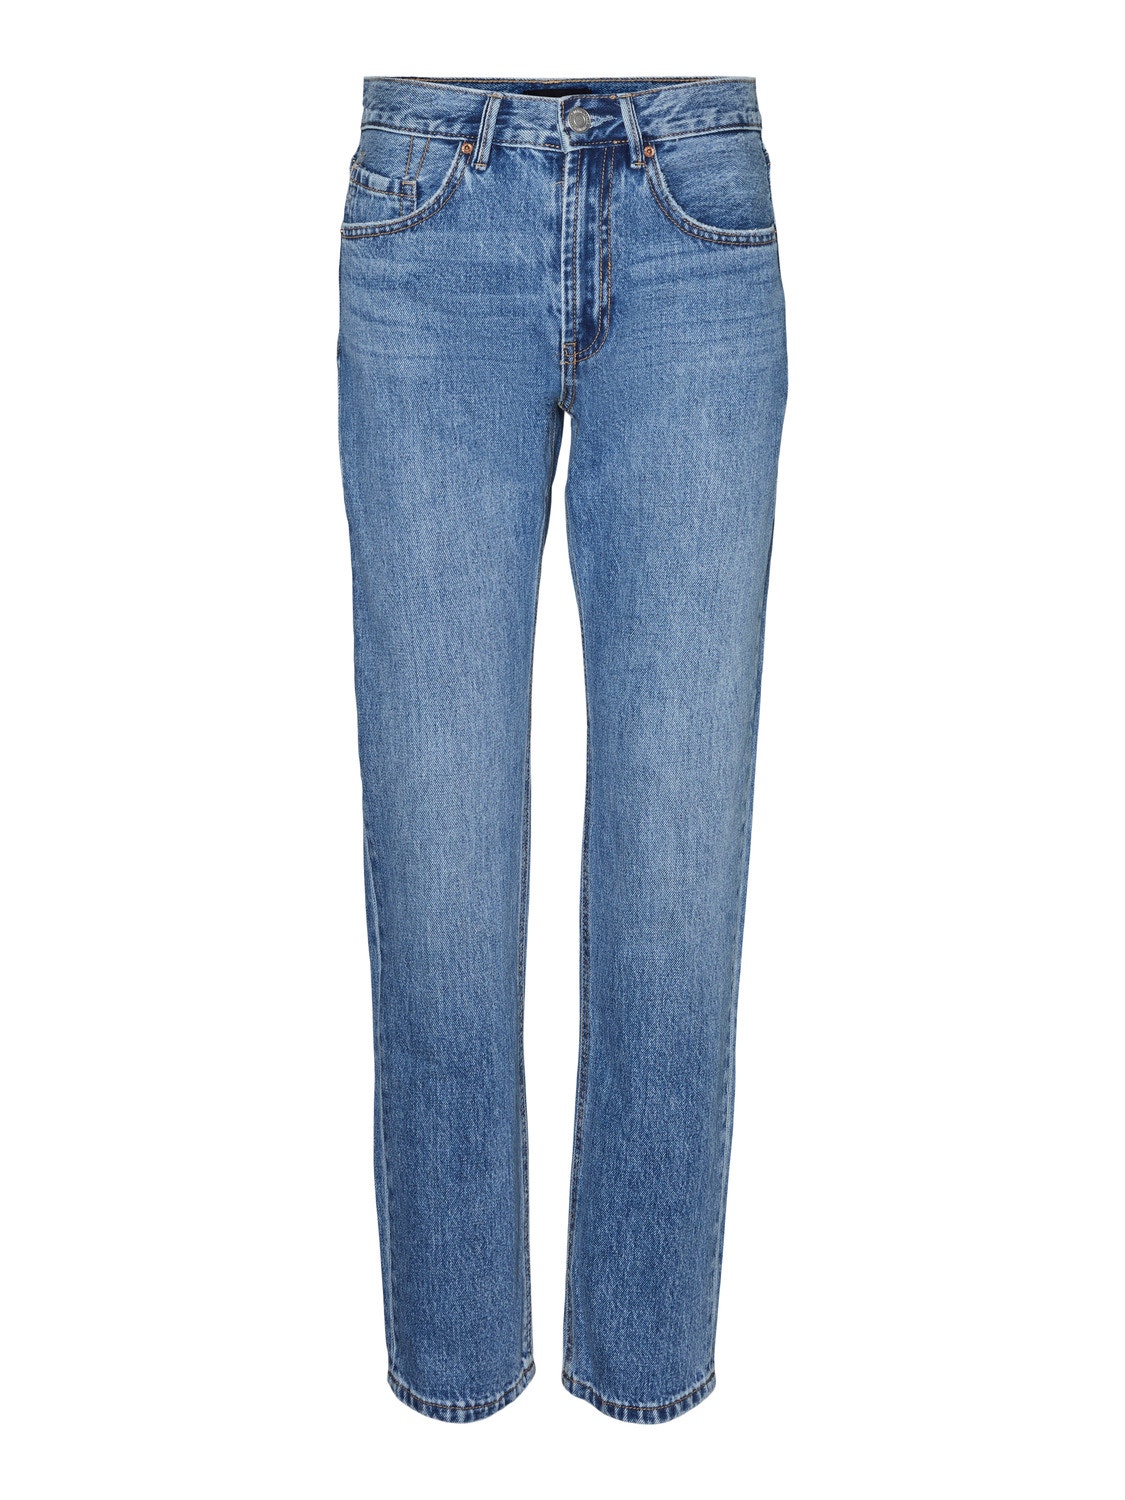 Vero Moda VMHAILEY Straight Fit Jeans -Medium Blue Denim - 10298718